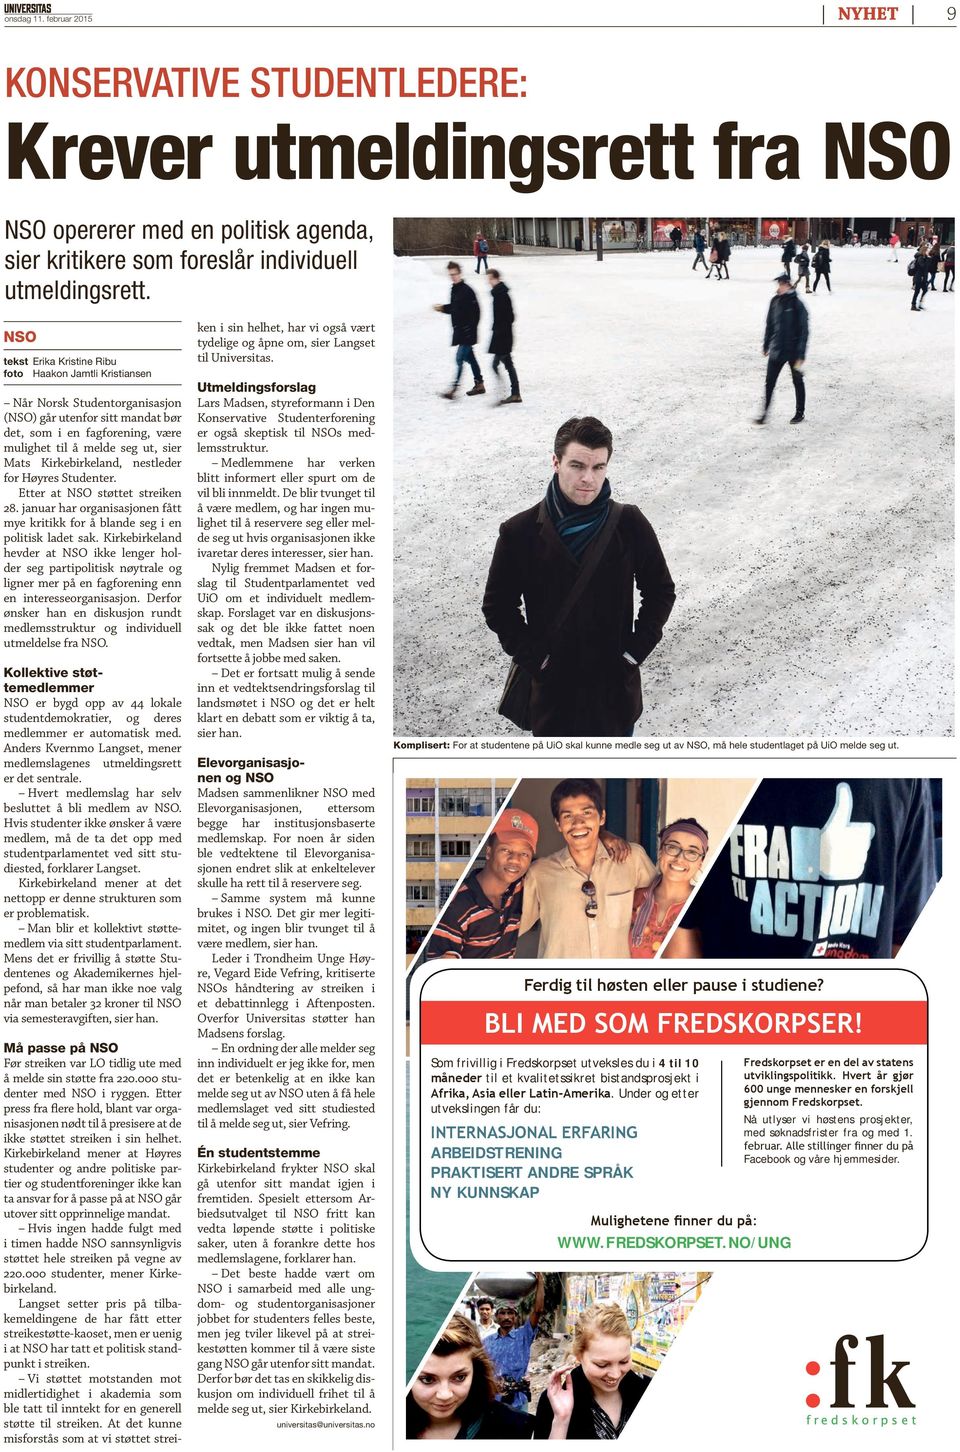 Kirkebirkeland, nestleder for Høyres Studenter. Etter at NSO støttet streiken 28. januar har organisasjonen fått mye kritikk for å blande seg i en politisk ladet sak.